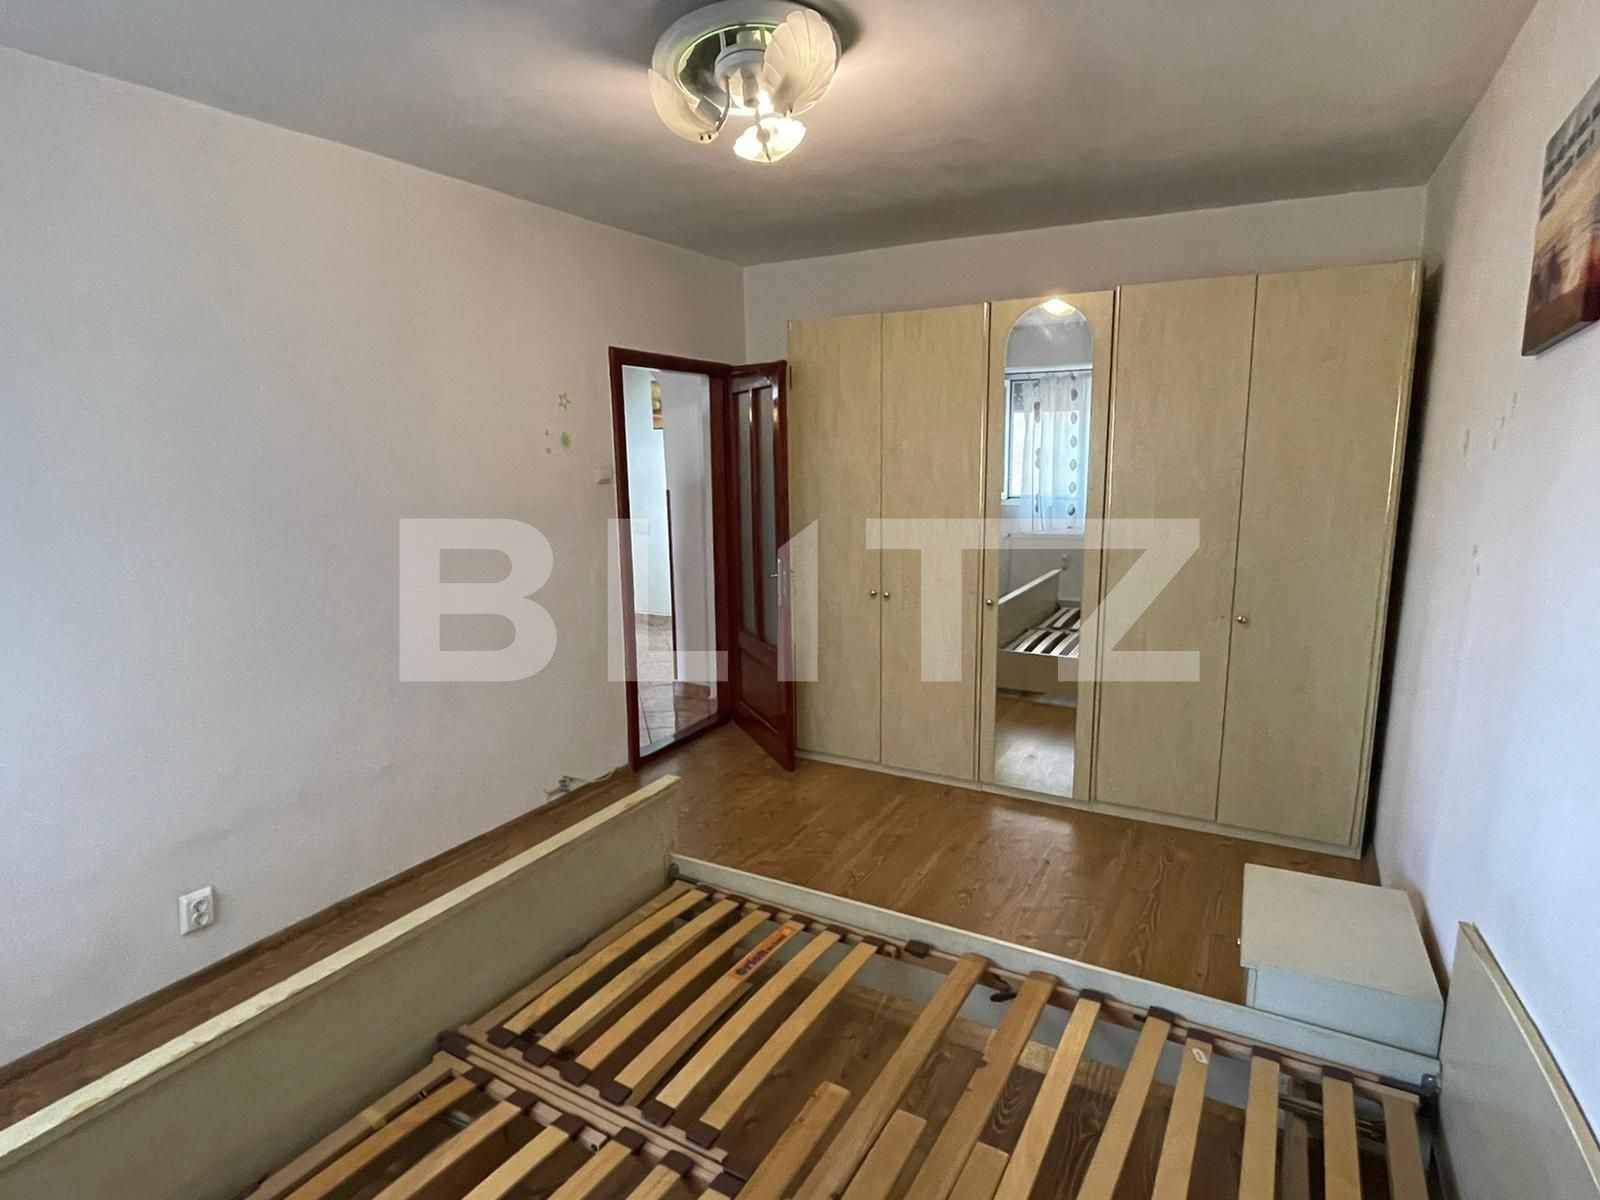 Apartament AN, 2 camere, decomandat, 60 mp, zona Dacia